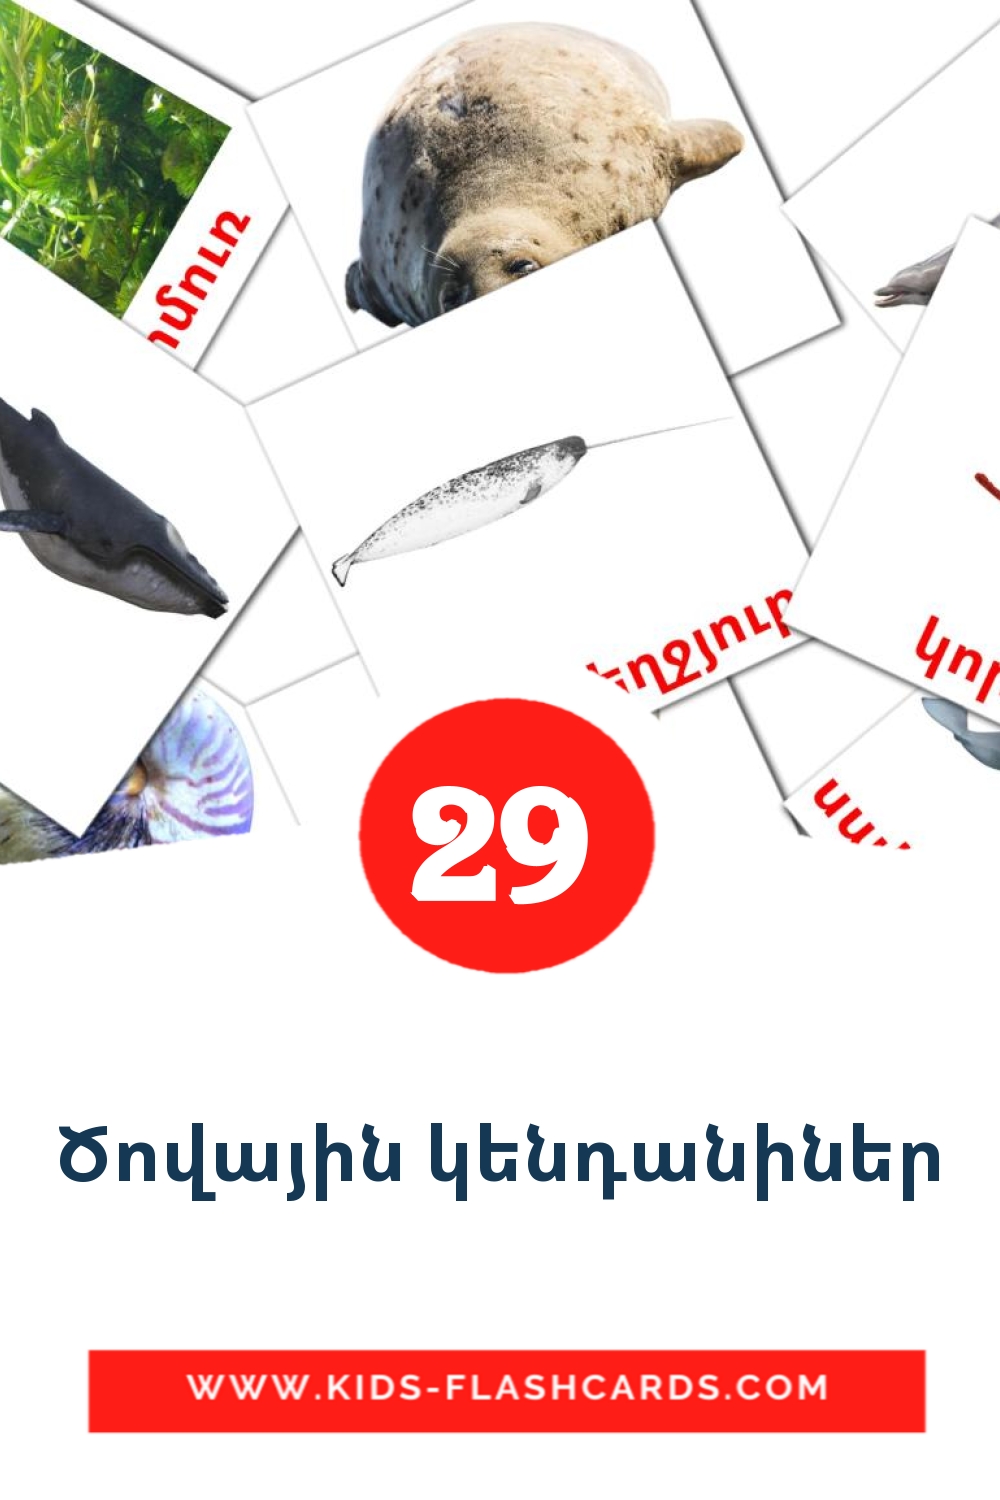 29 Cartões com Imagens de Ծովային կենդանիներ para Jardim de Infância em armênio